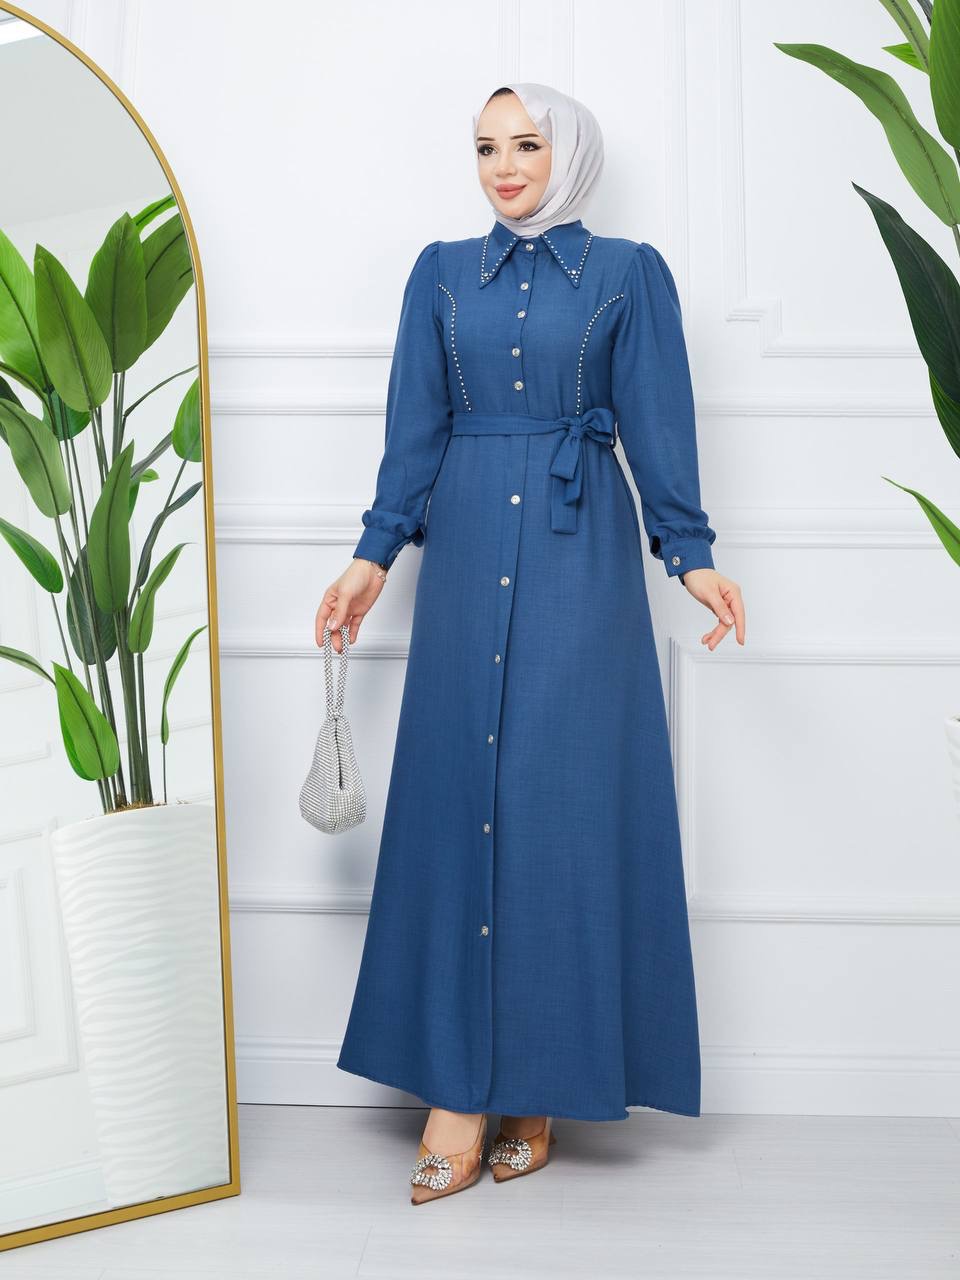 Toptan Kadın Tesettür Elbise Mavi Renk - İSTANBUL TOPTAN GİYİM